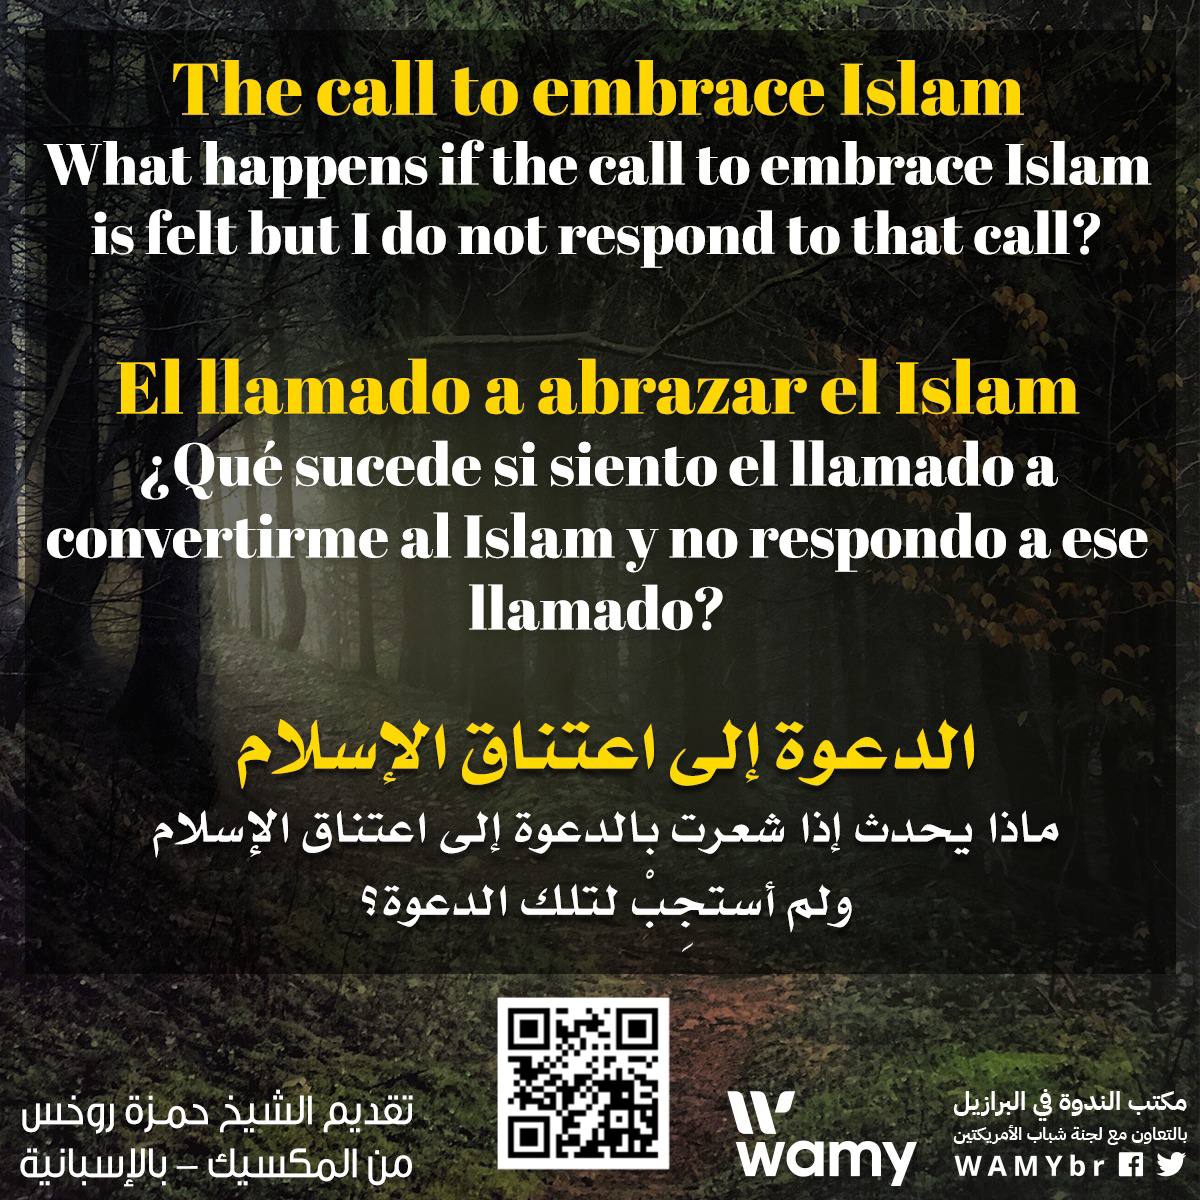 ¿Qué sucede si siento el llamado a convertirme al Islam y no respondo a ese llamado?